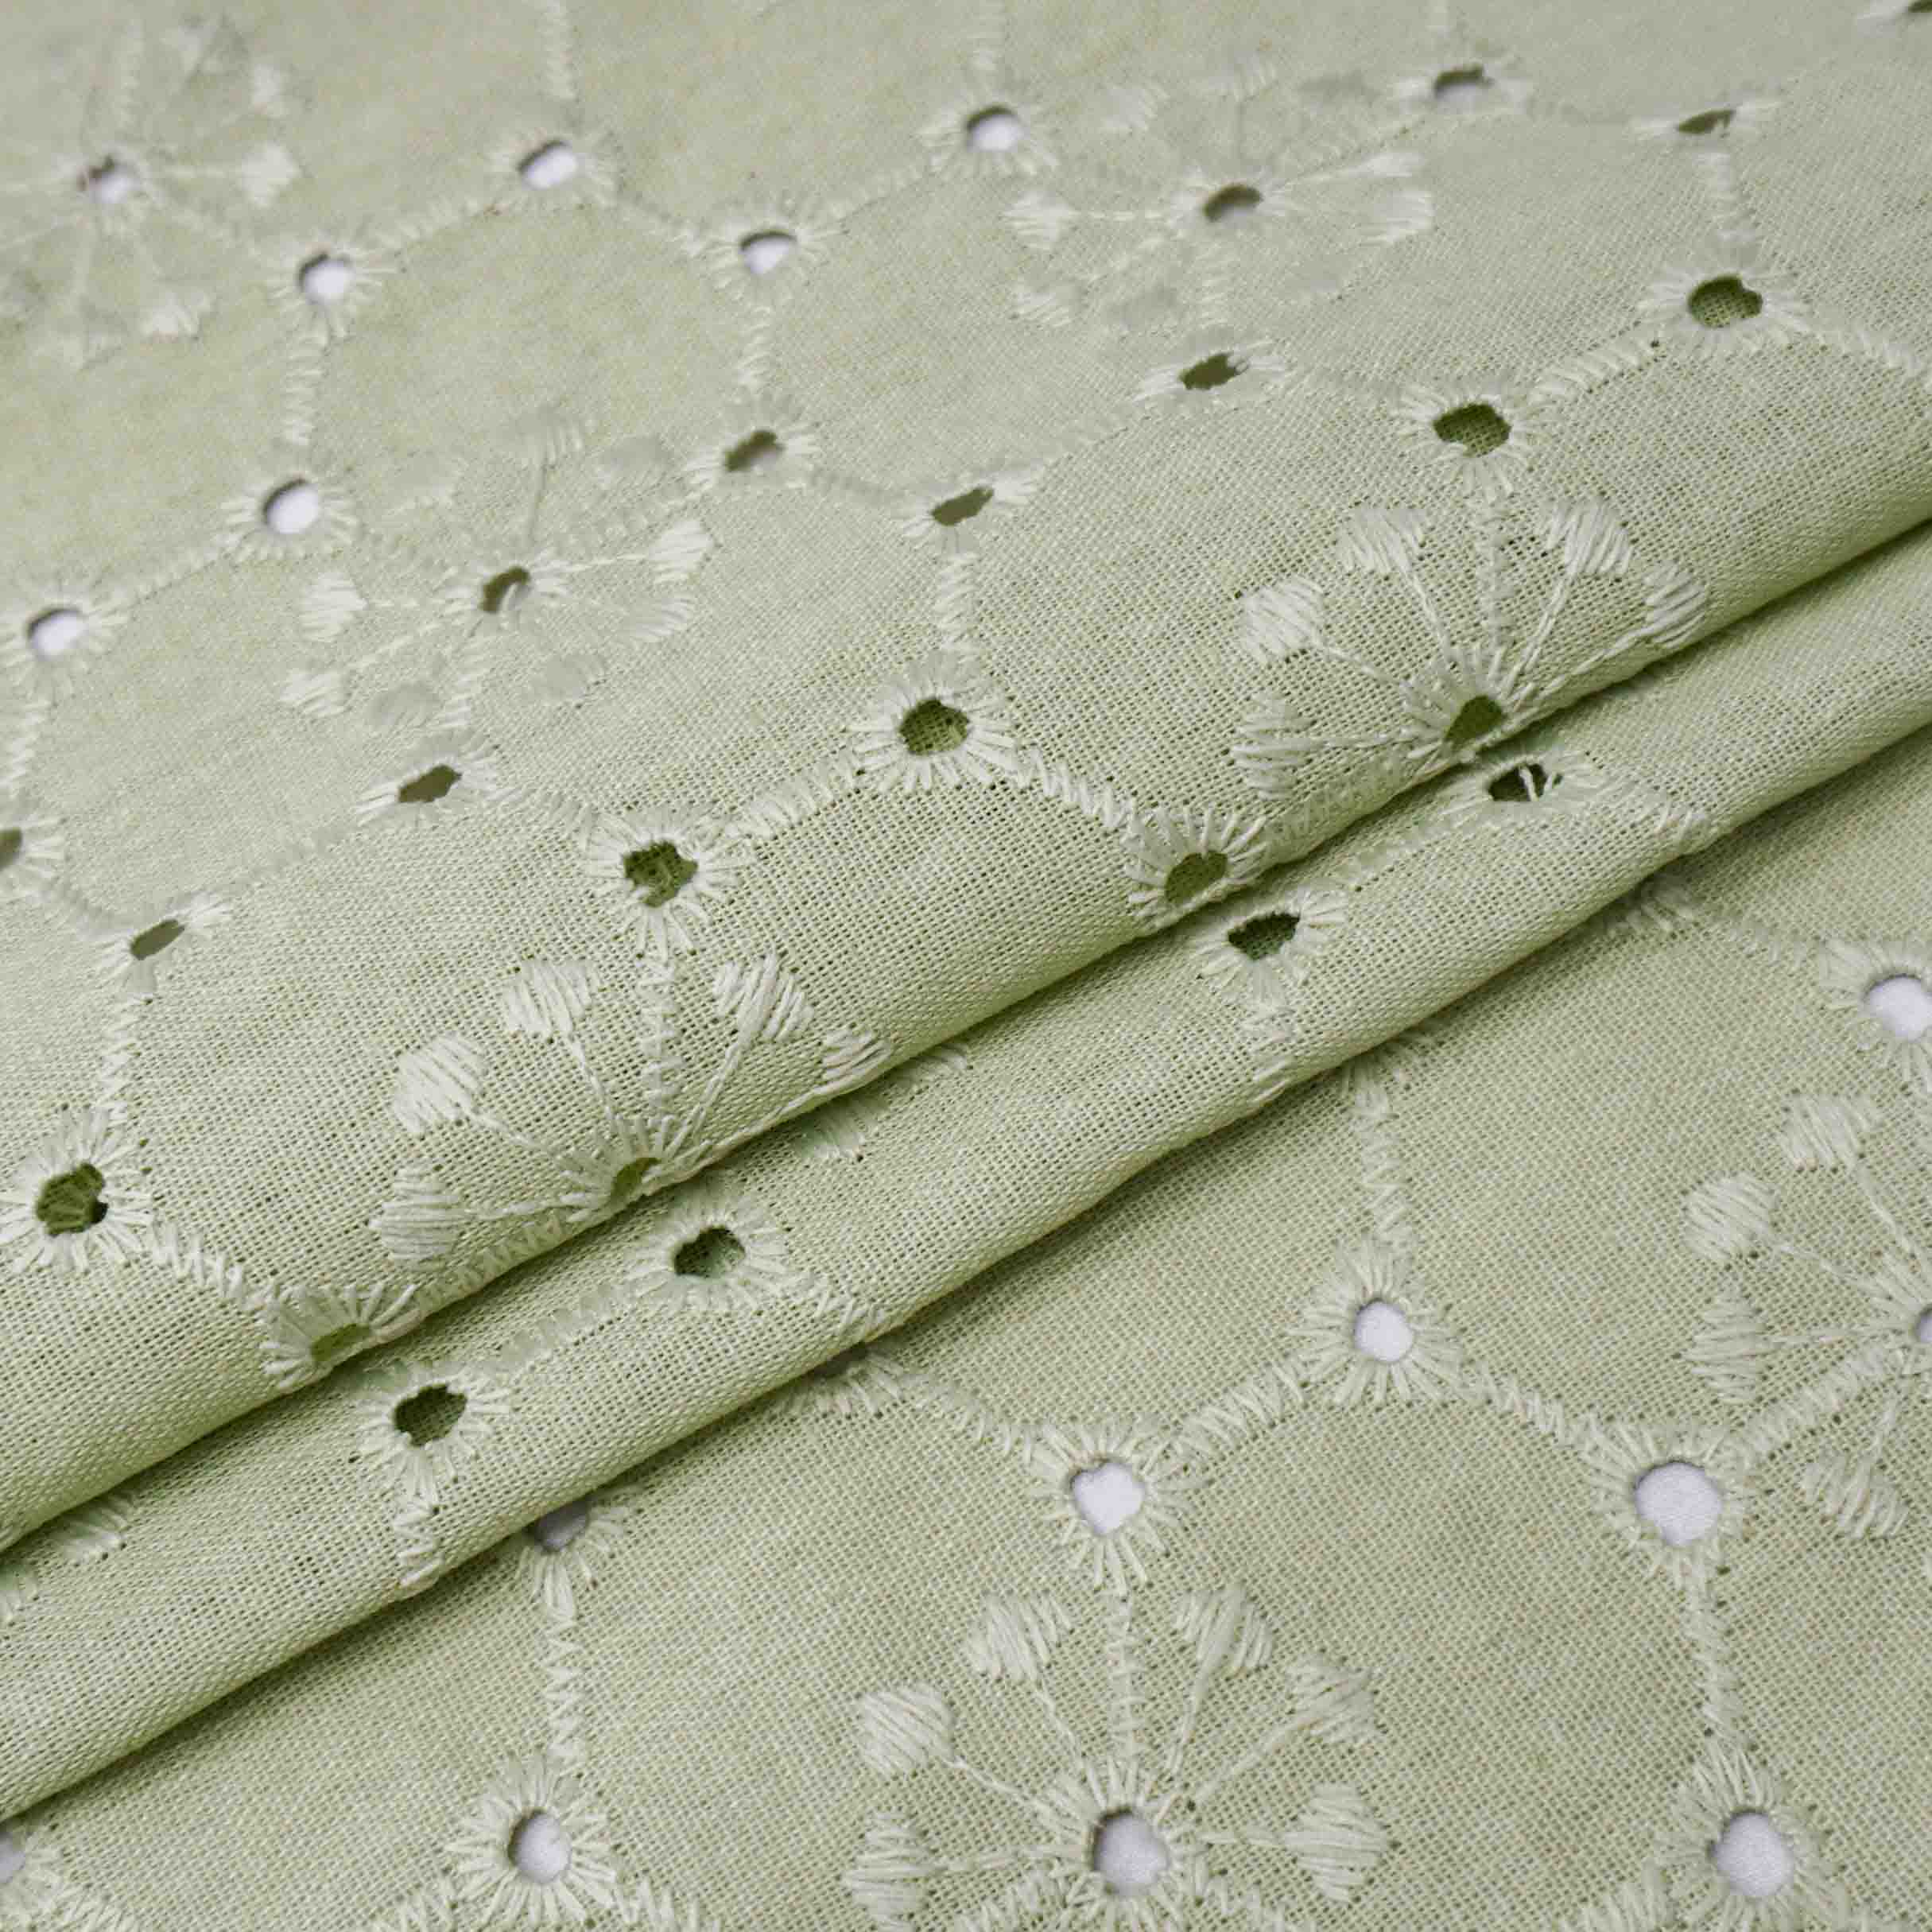 Tecido linho misto bordado (laise) verde oliva claro